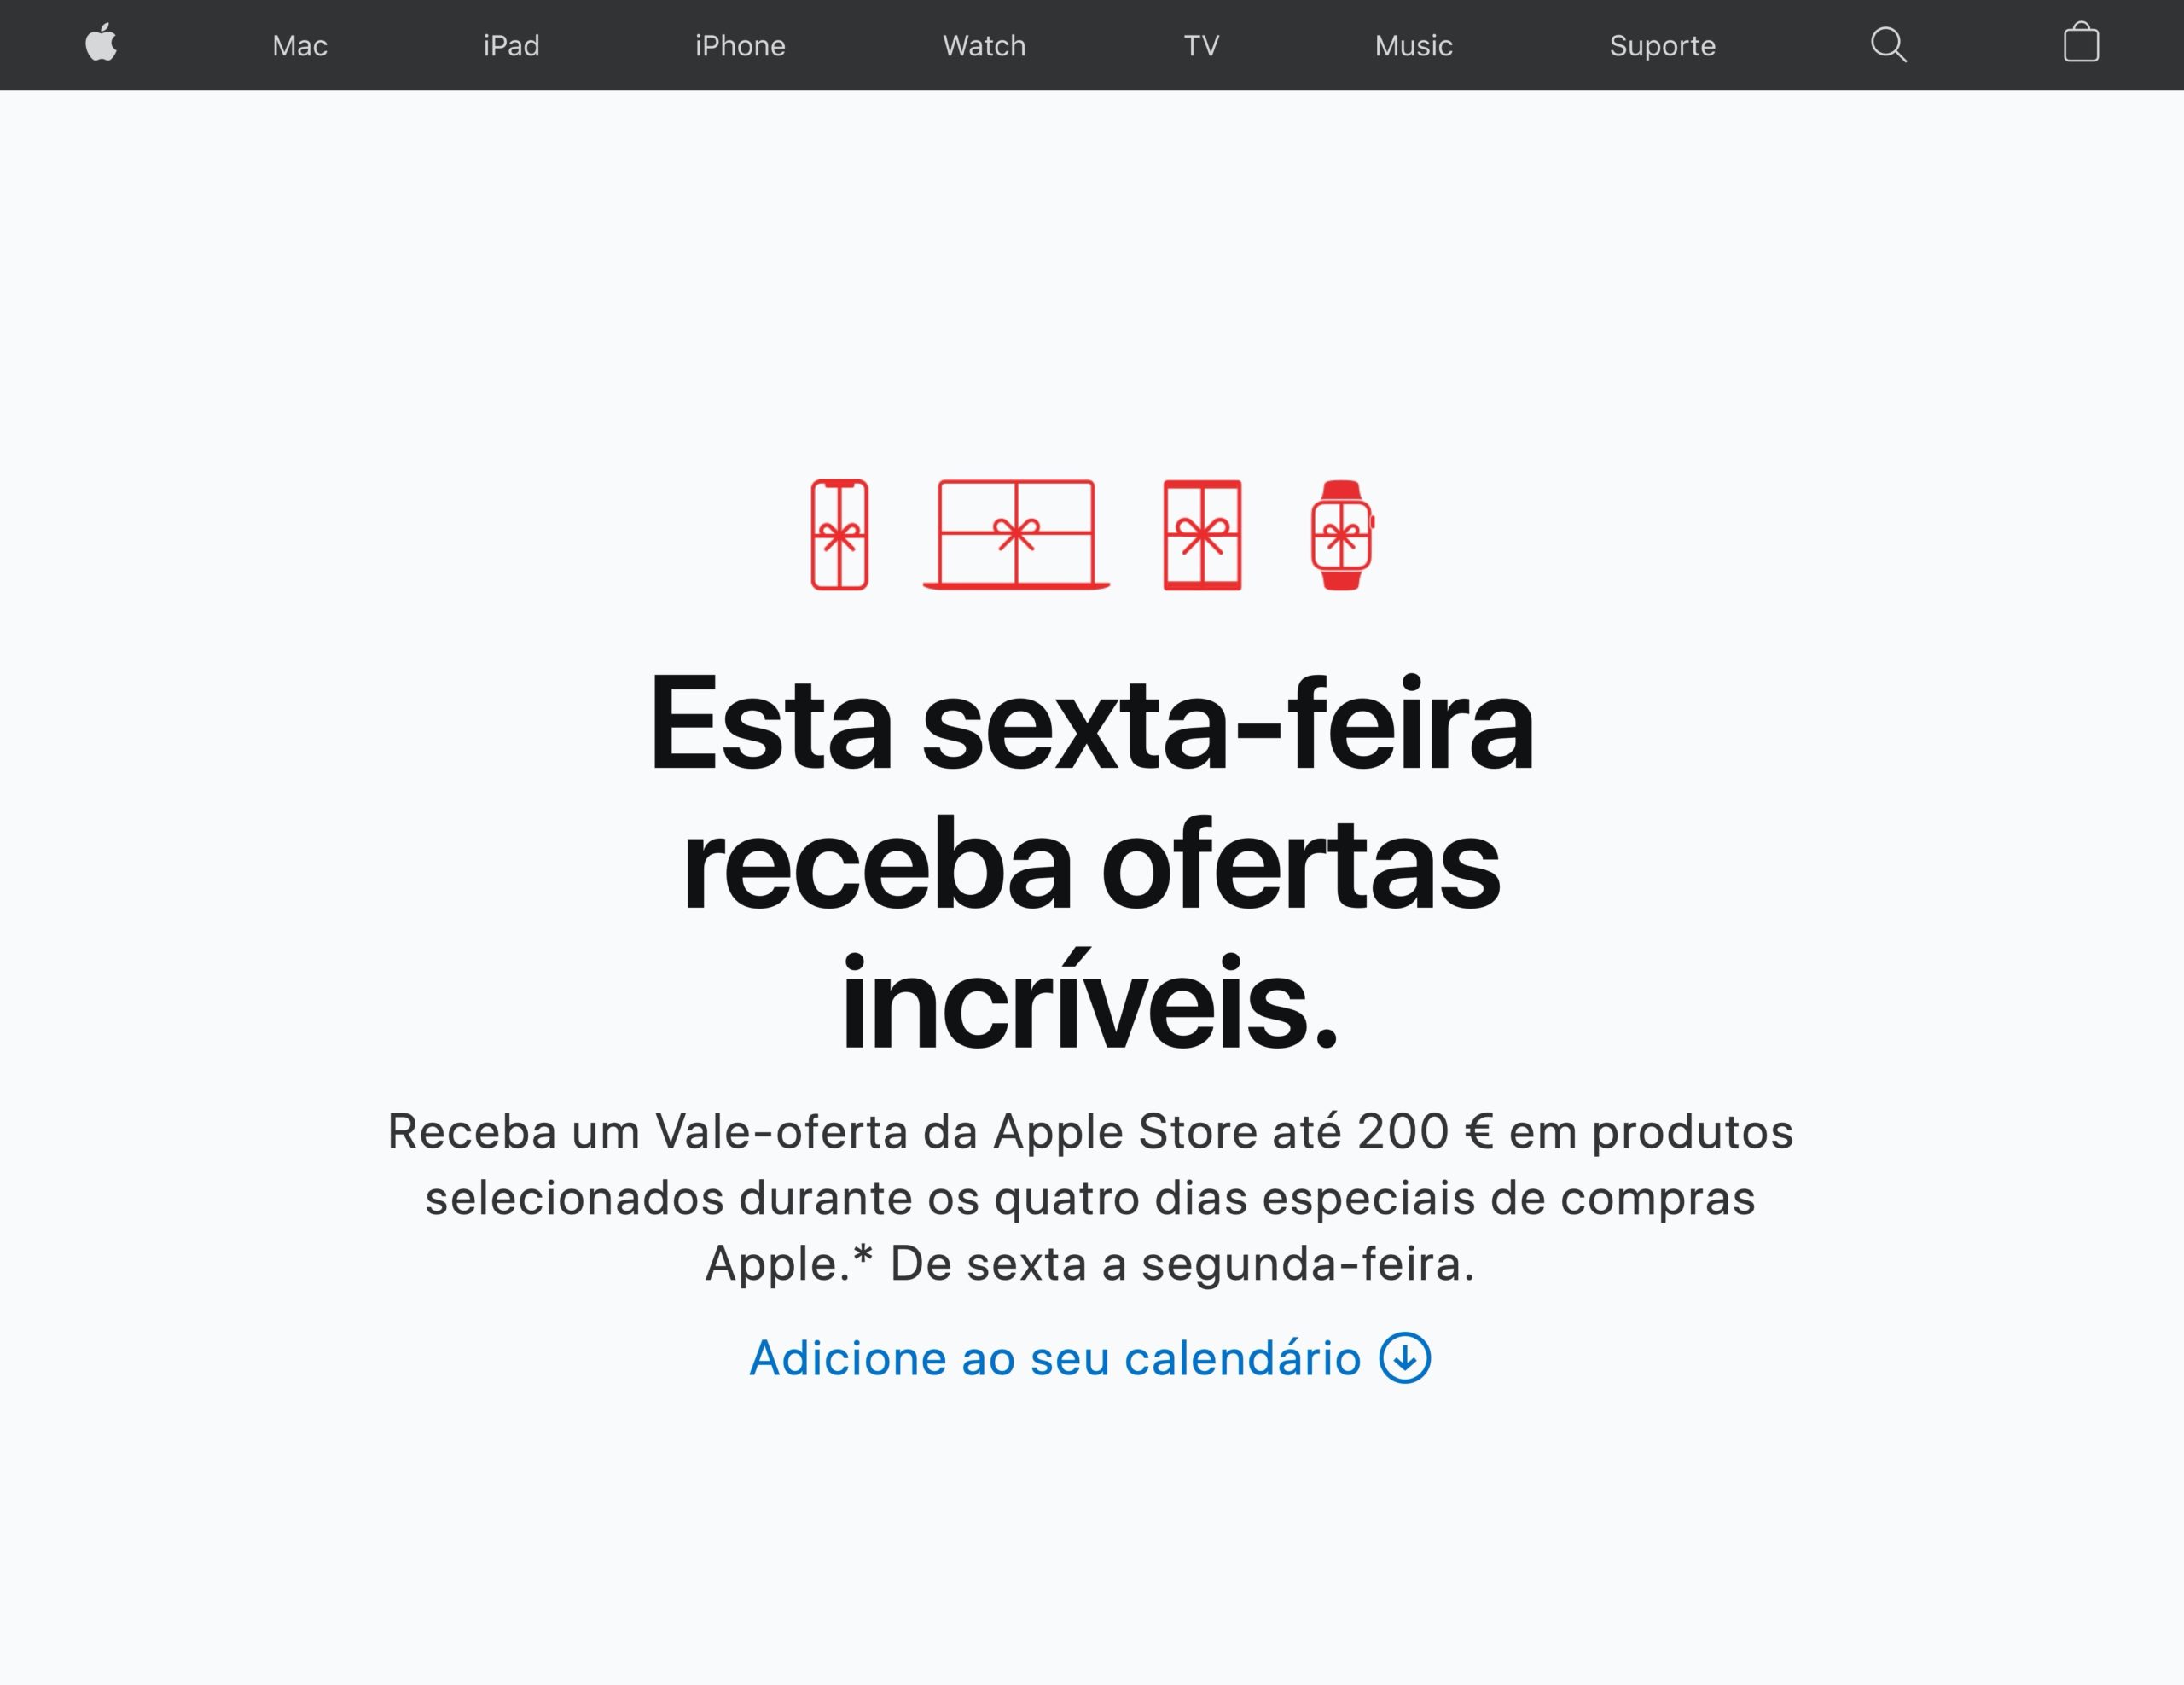 Brasiilia ei kasuta Apple'i musta reedet, Portugal aga küll